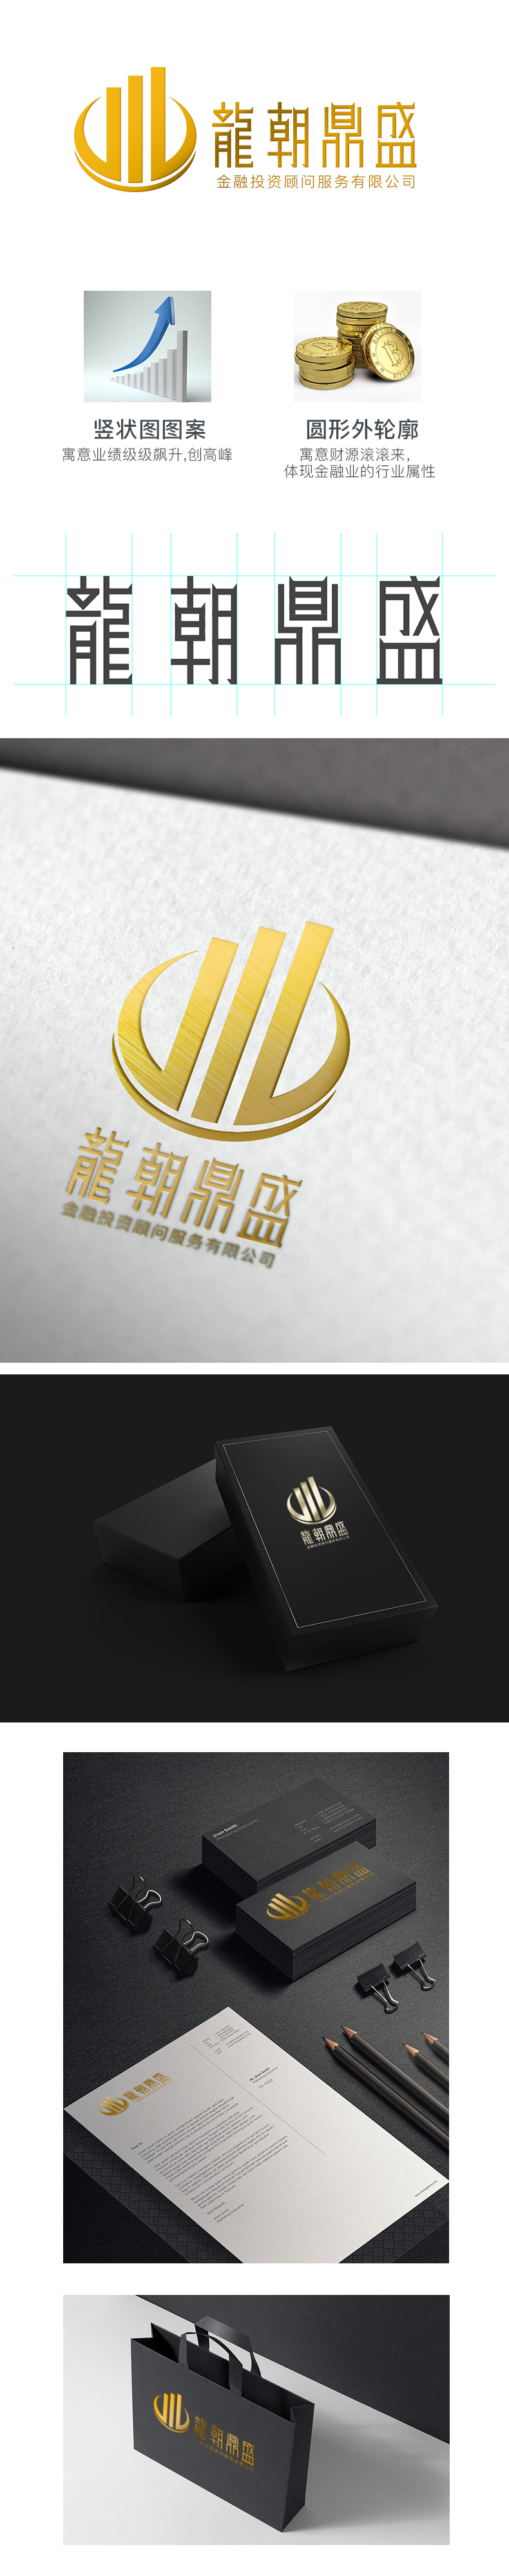 龙朝鼎盛 创意品牌 金融投资理财行业 品牌 logo 标志 名片 vi设计